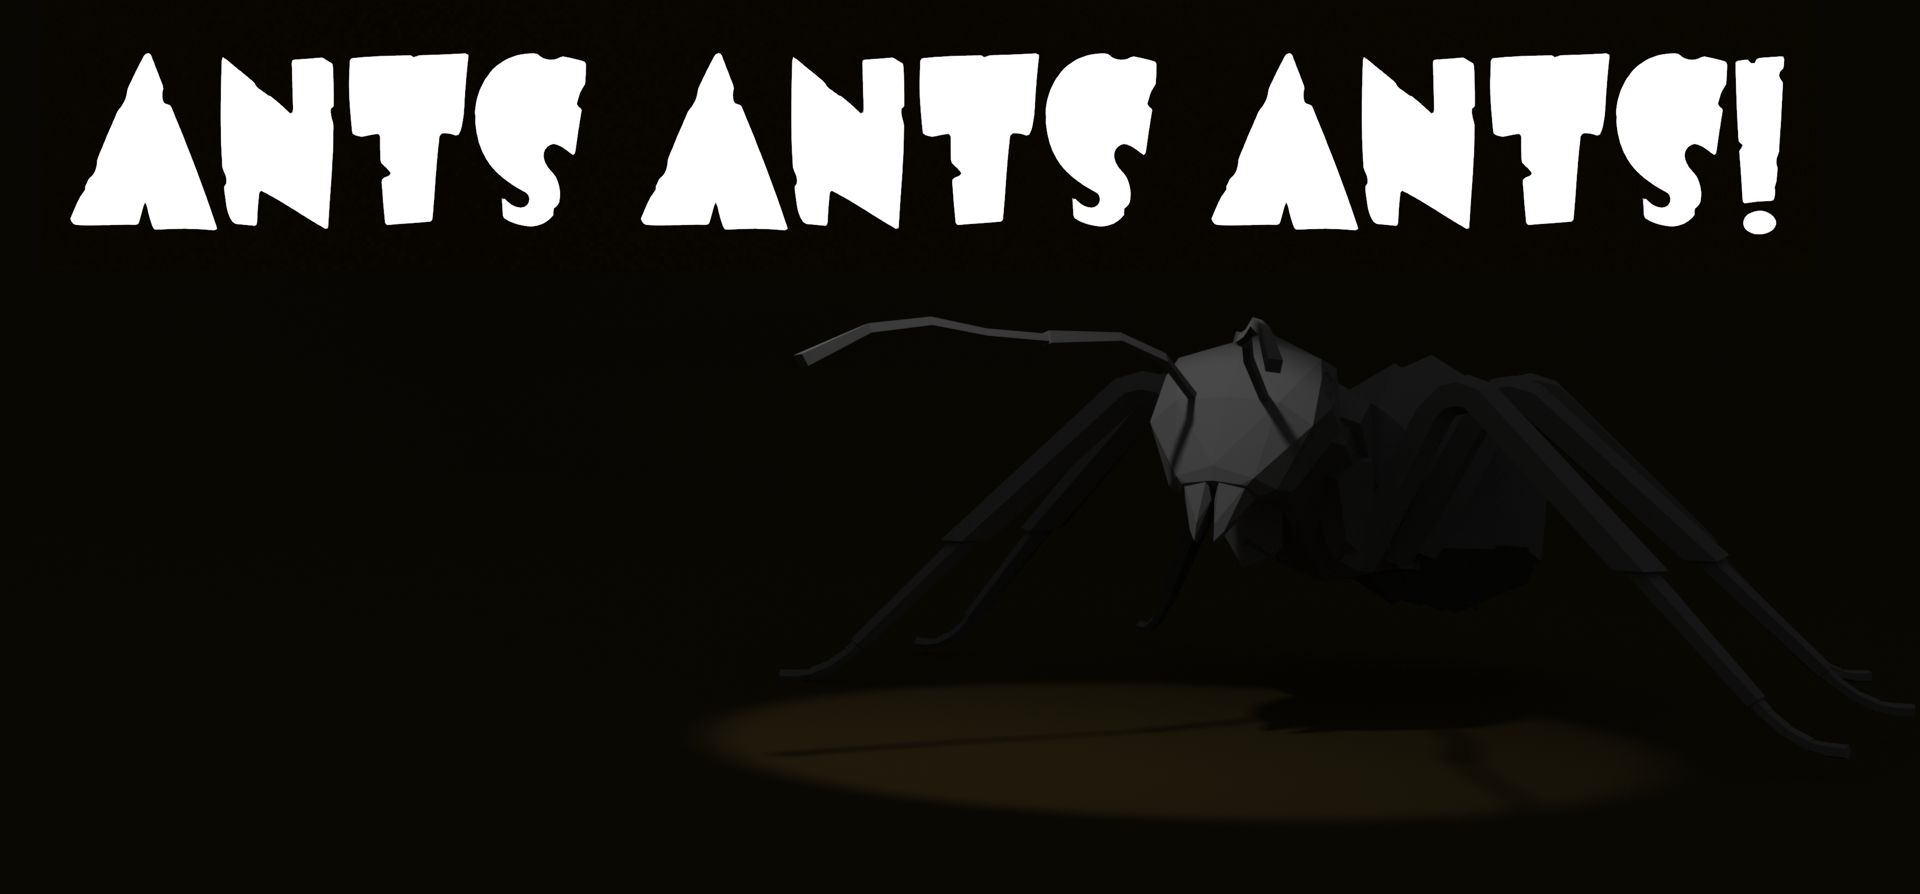 Ants Ants Ants!